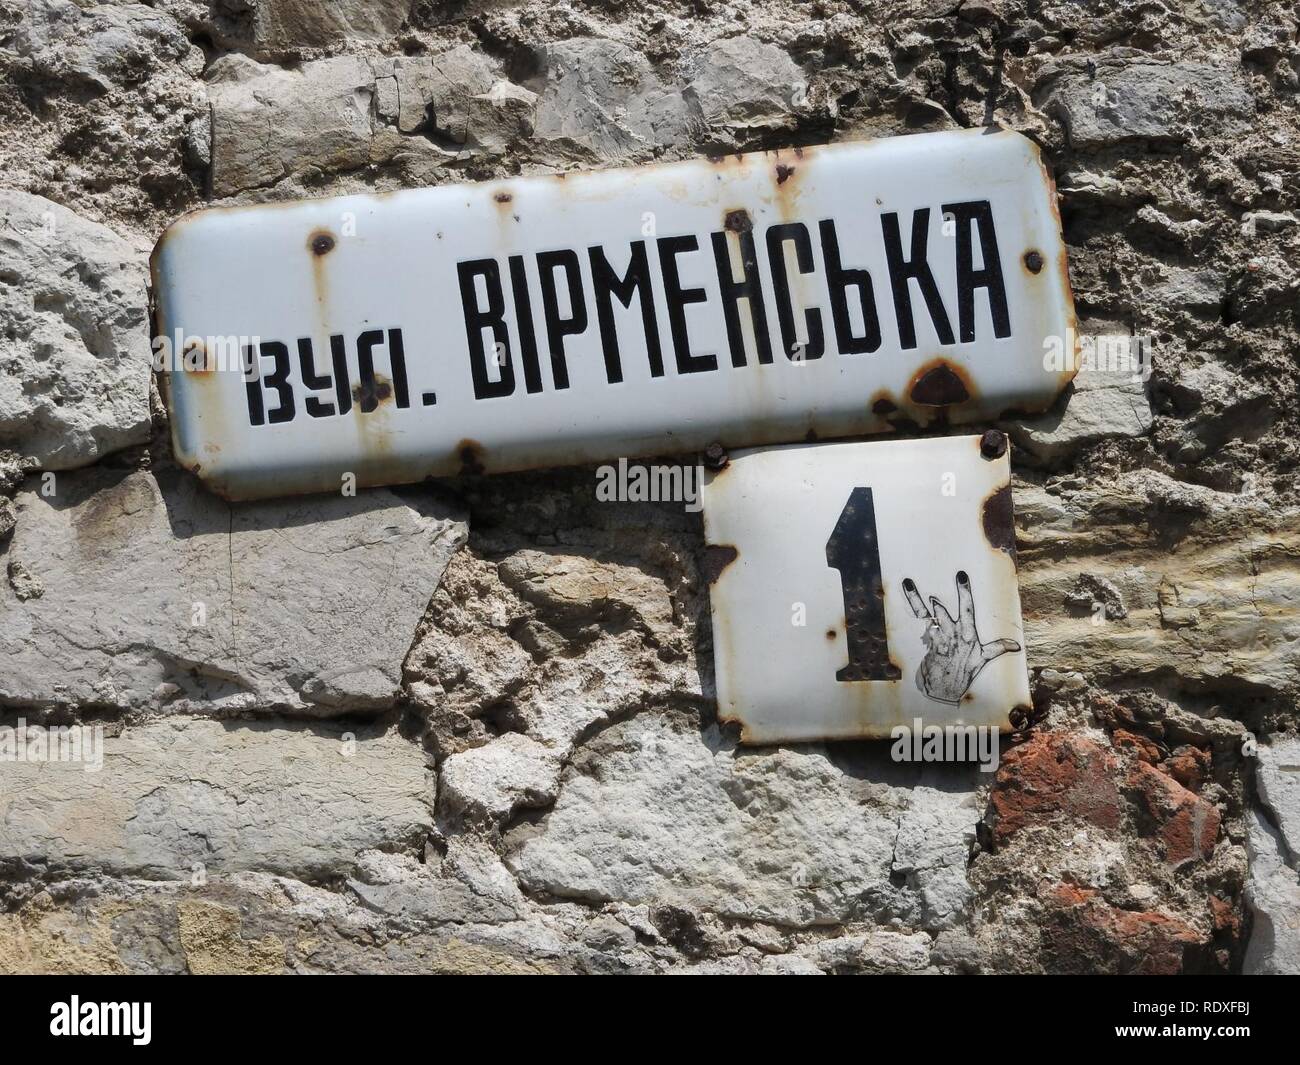 Armenian street, Kamyanets Podilsky 02. Stock Photo